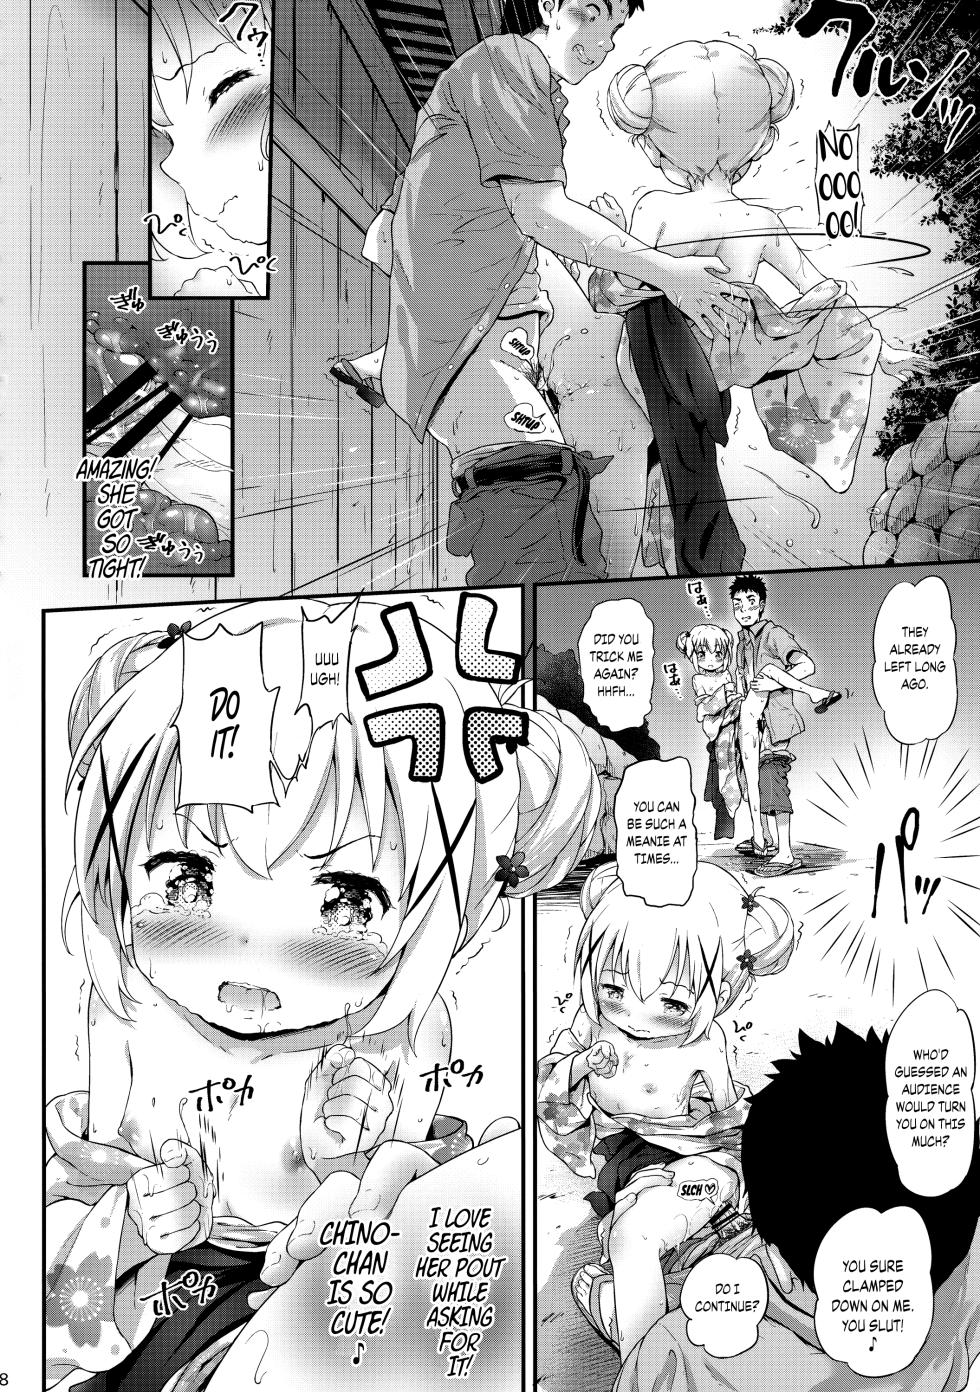 [Argyle check, Wanton Land Kumiai (Komamemaru)] Toro Musume 17 Chino-chan Hajimemashita! 3 (Gochuumon wa Usagi desu ka?) [2018-09-05] [English] {Chrysanthemum} - Page 17